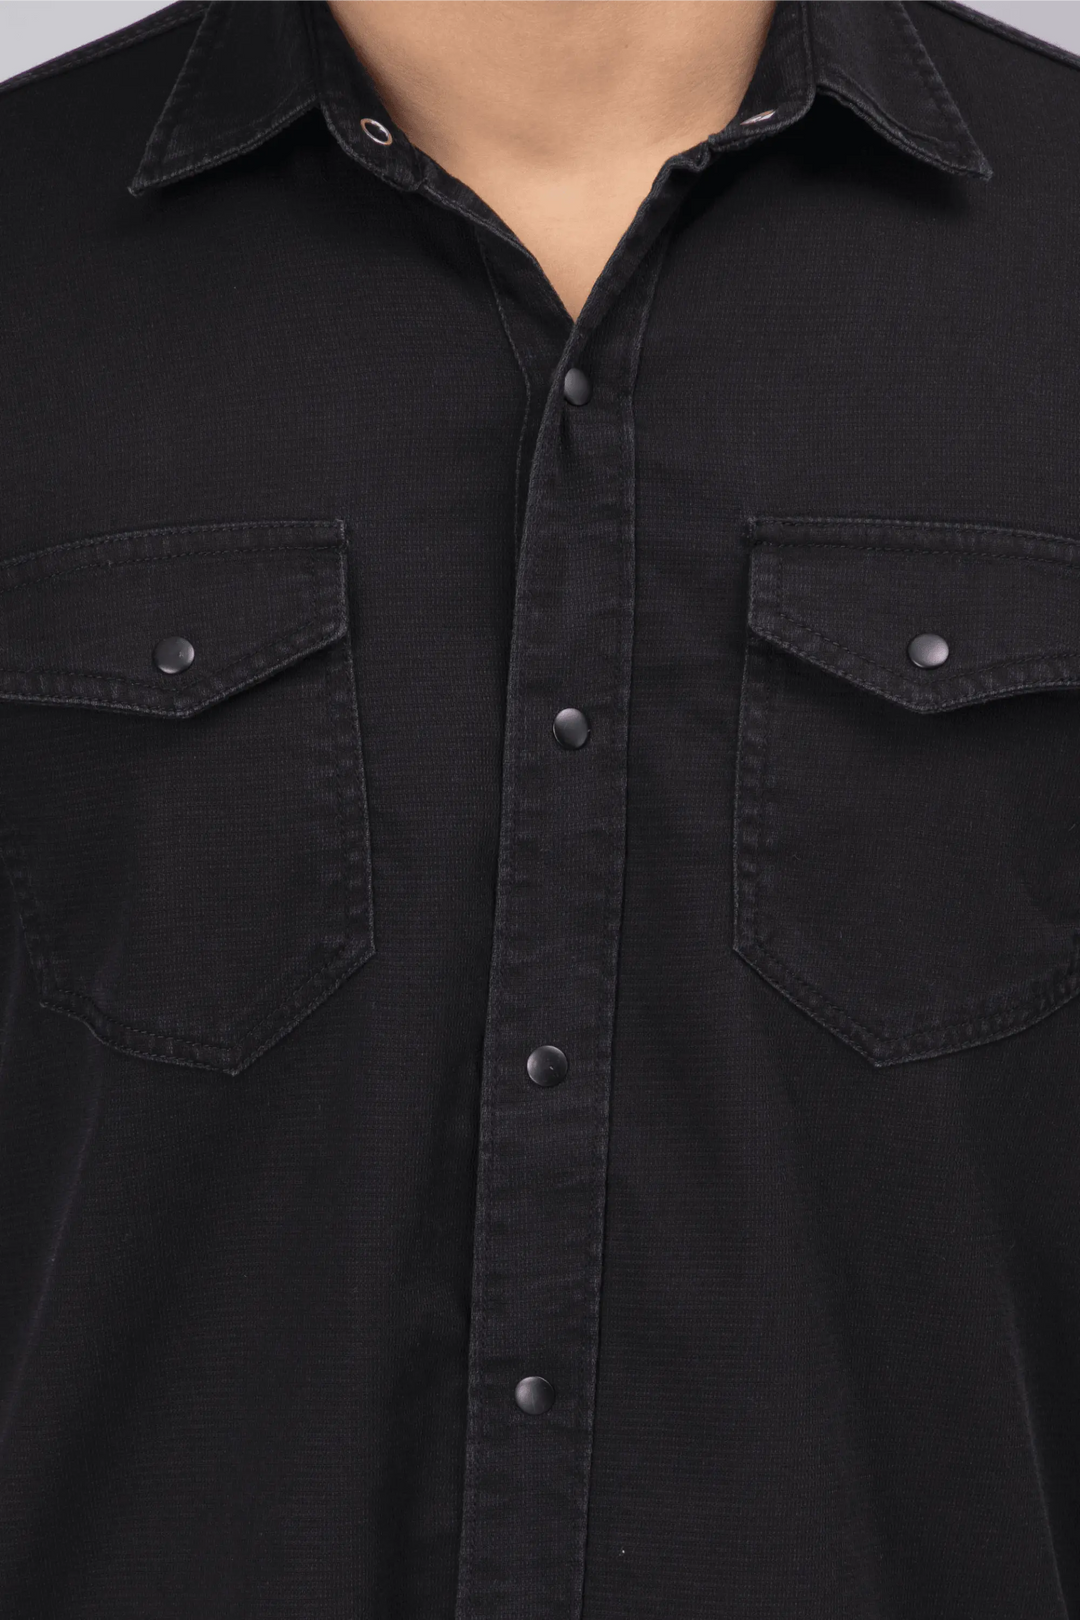 Regular Fit Black Solid Denim Shirt For Men - Peplos Jeans 